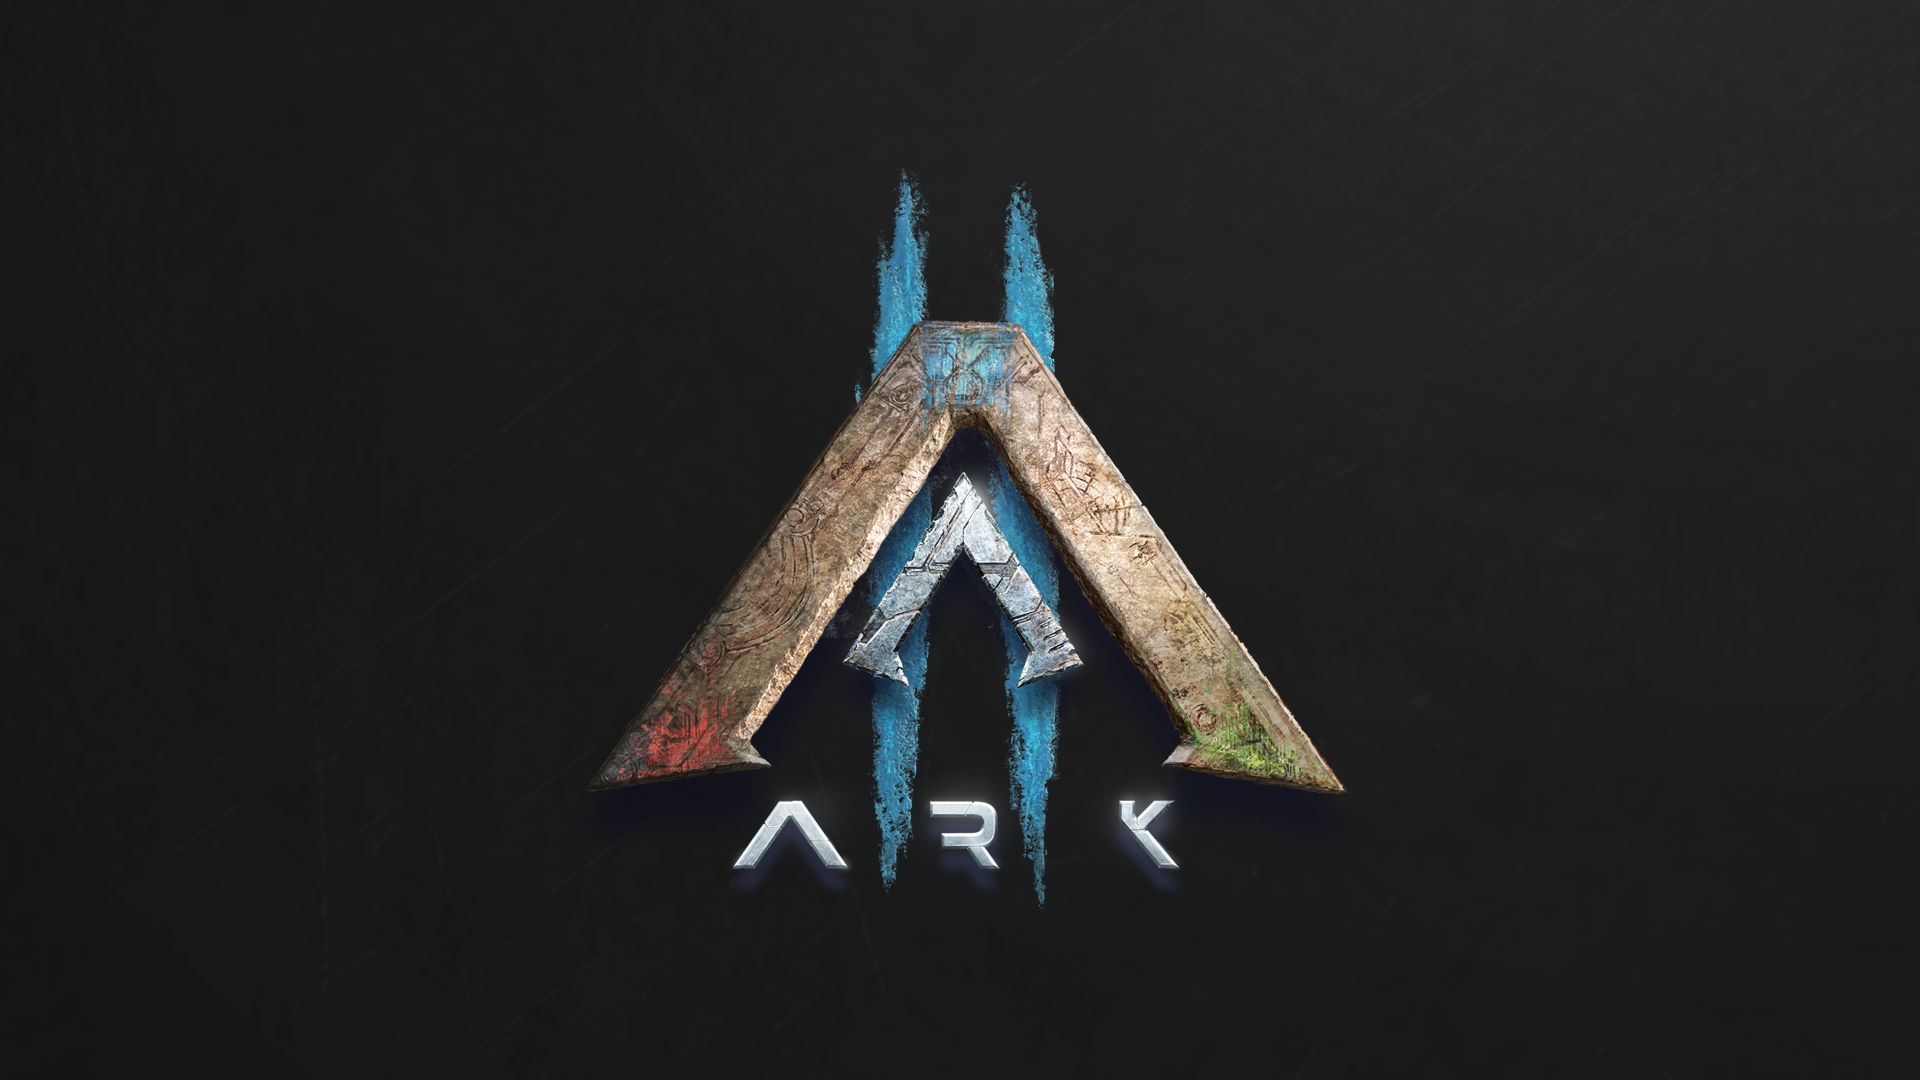 Ark 2. Ark Fjord руны. Ястреб фьордов АРК. Тильт АРК 2 болта. Ark 2 дата